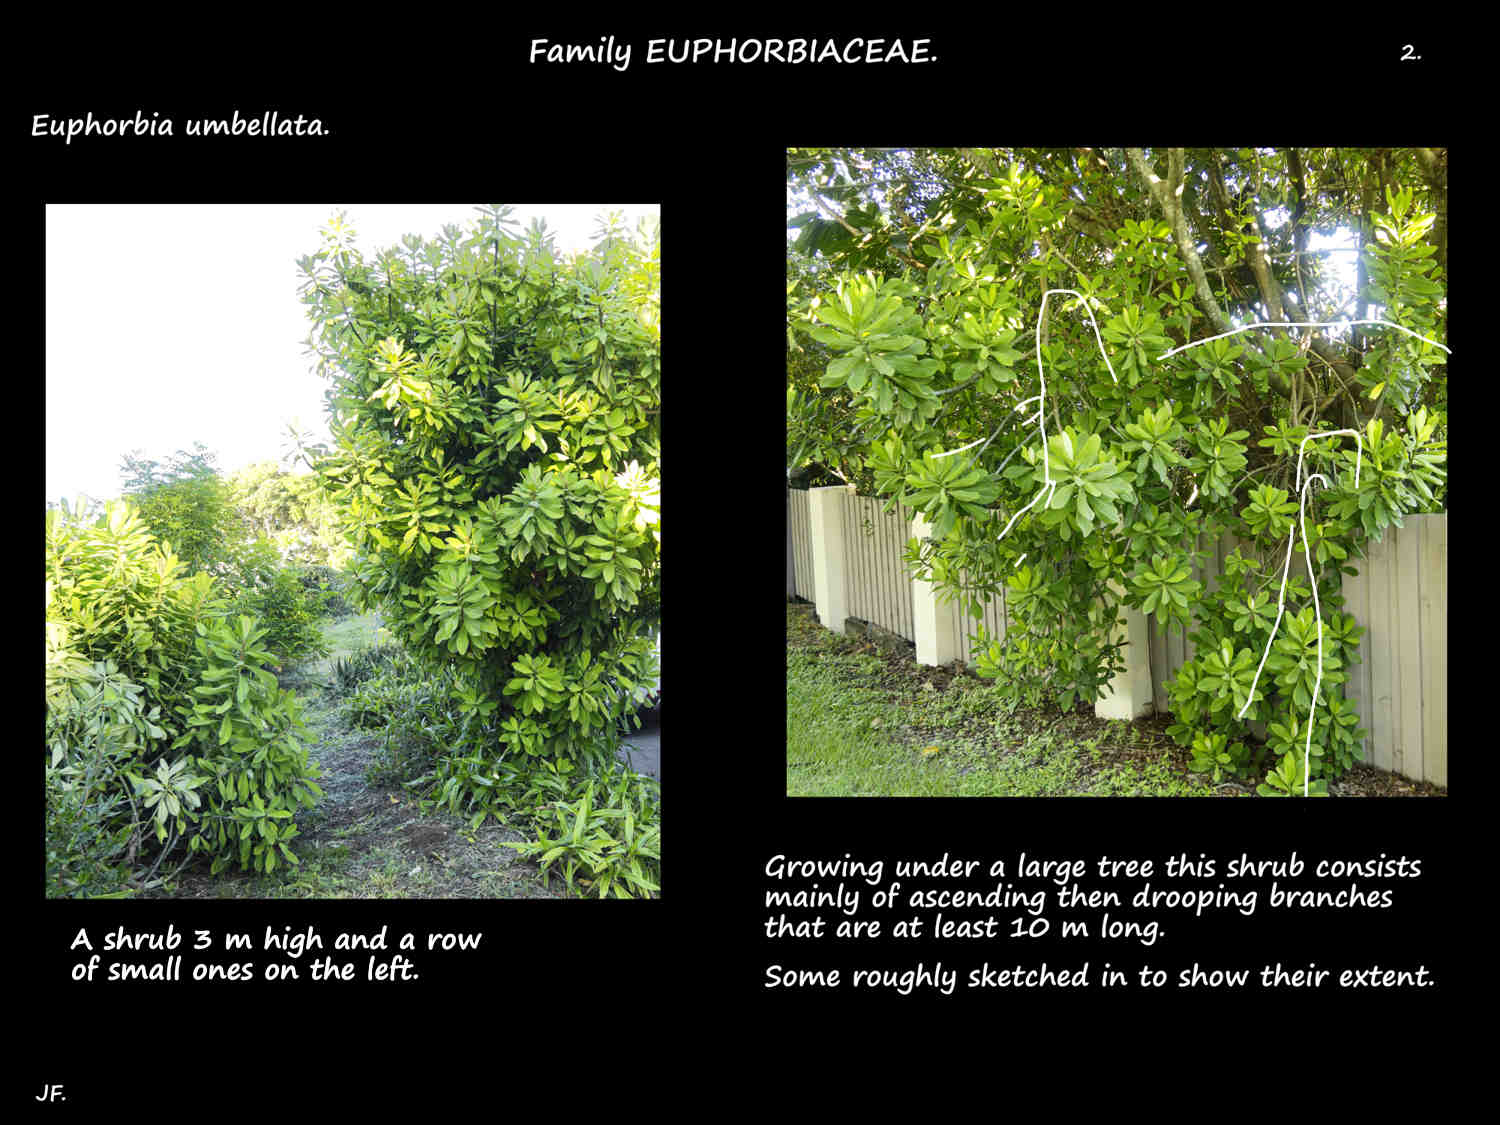 2 Two more Euphorbia umbellata shrubs